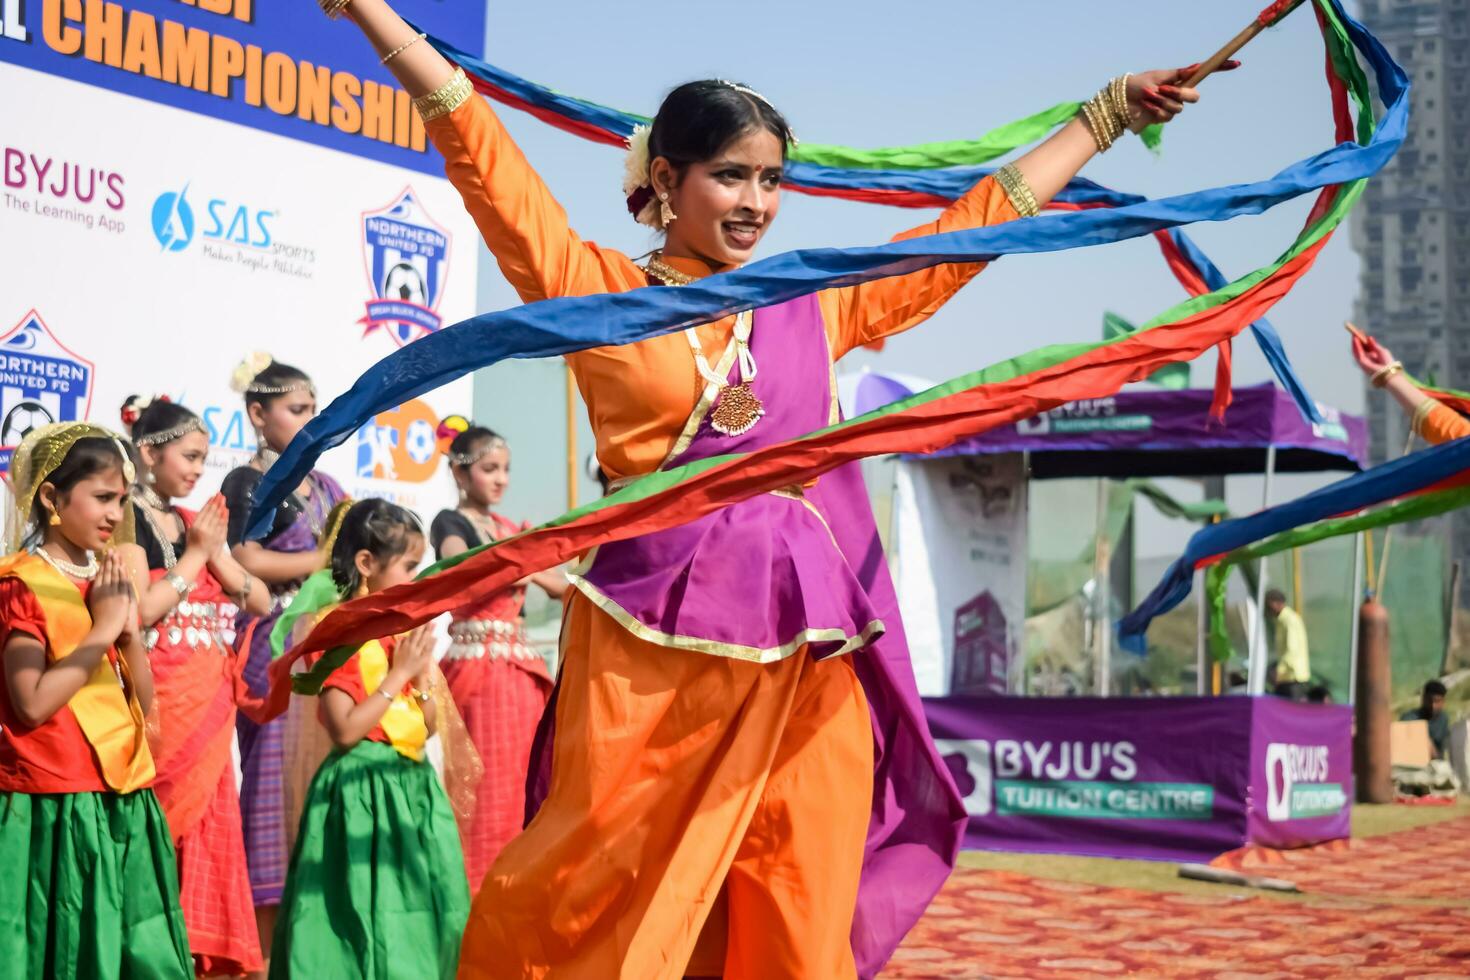 nieuw Delhi, Indië - juli 01 2023 - bharathanatyam Indisch klassiek odissi dansers het uitvoeren van Bij fase. mooi Indisch meisje dansers in de houding van Indisch dans. Indisch klassiek dans bharatanatyam foto